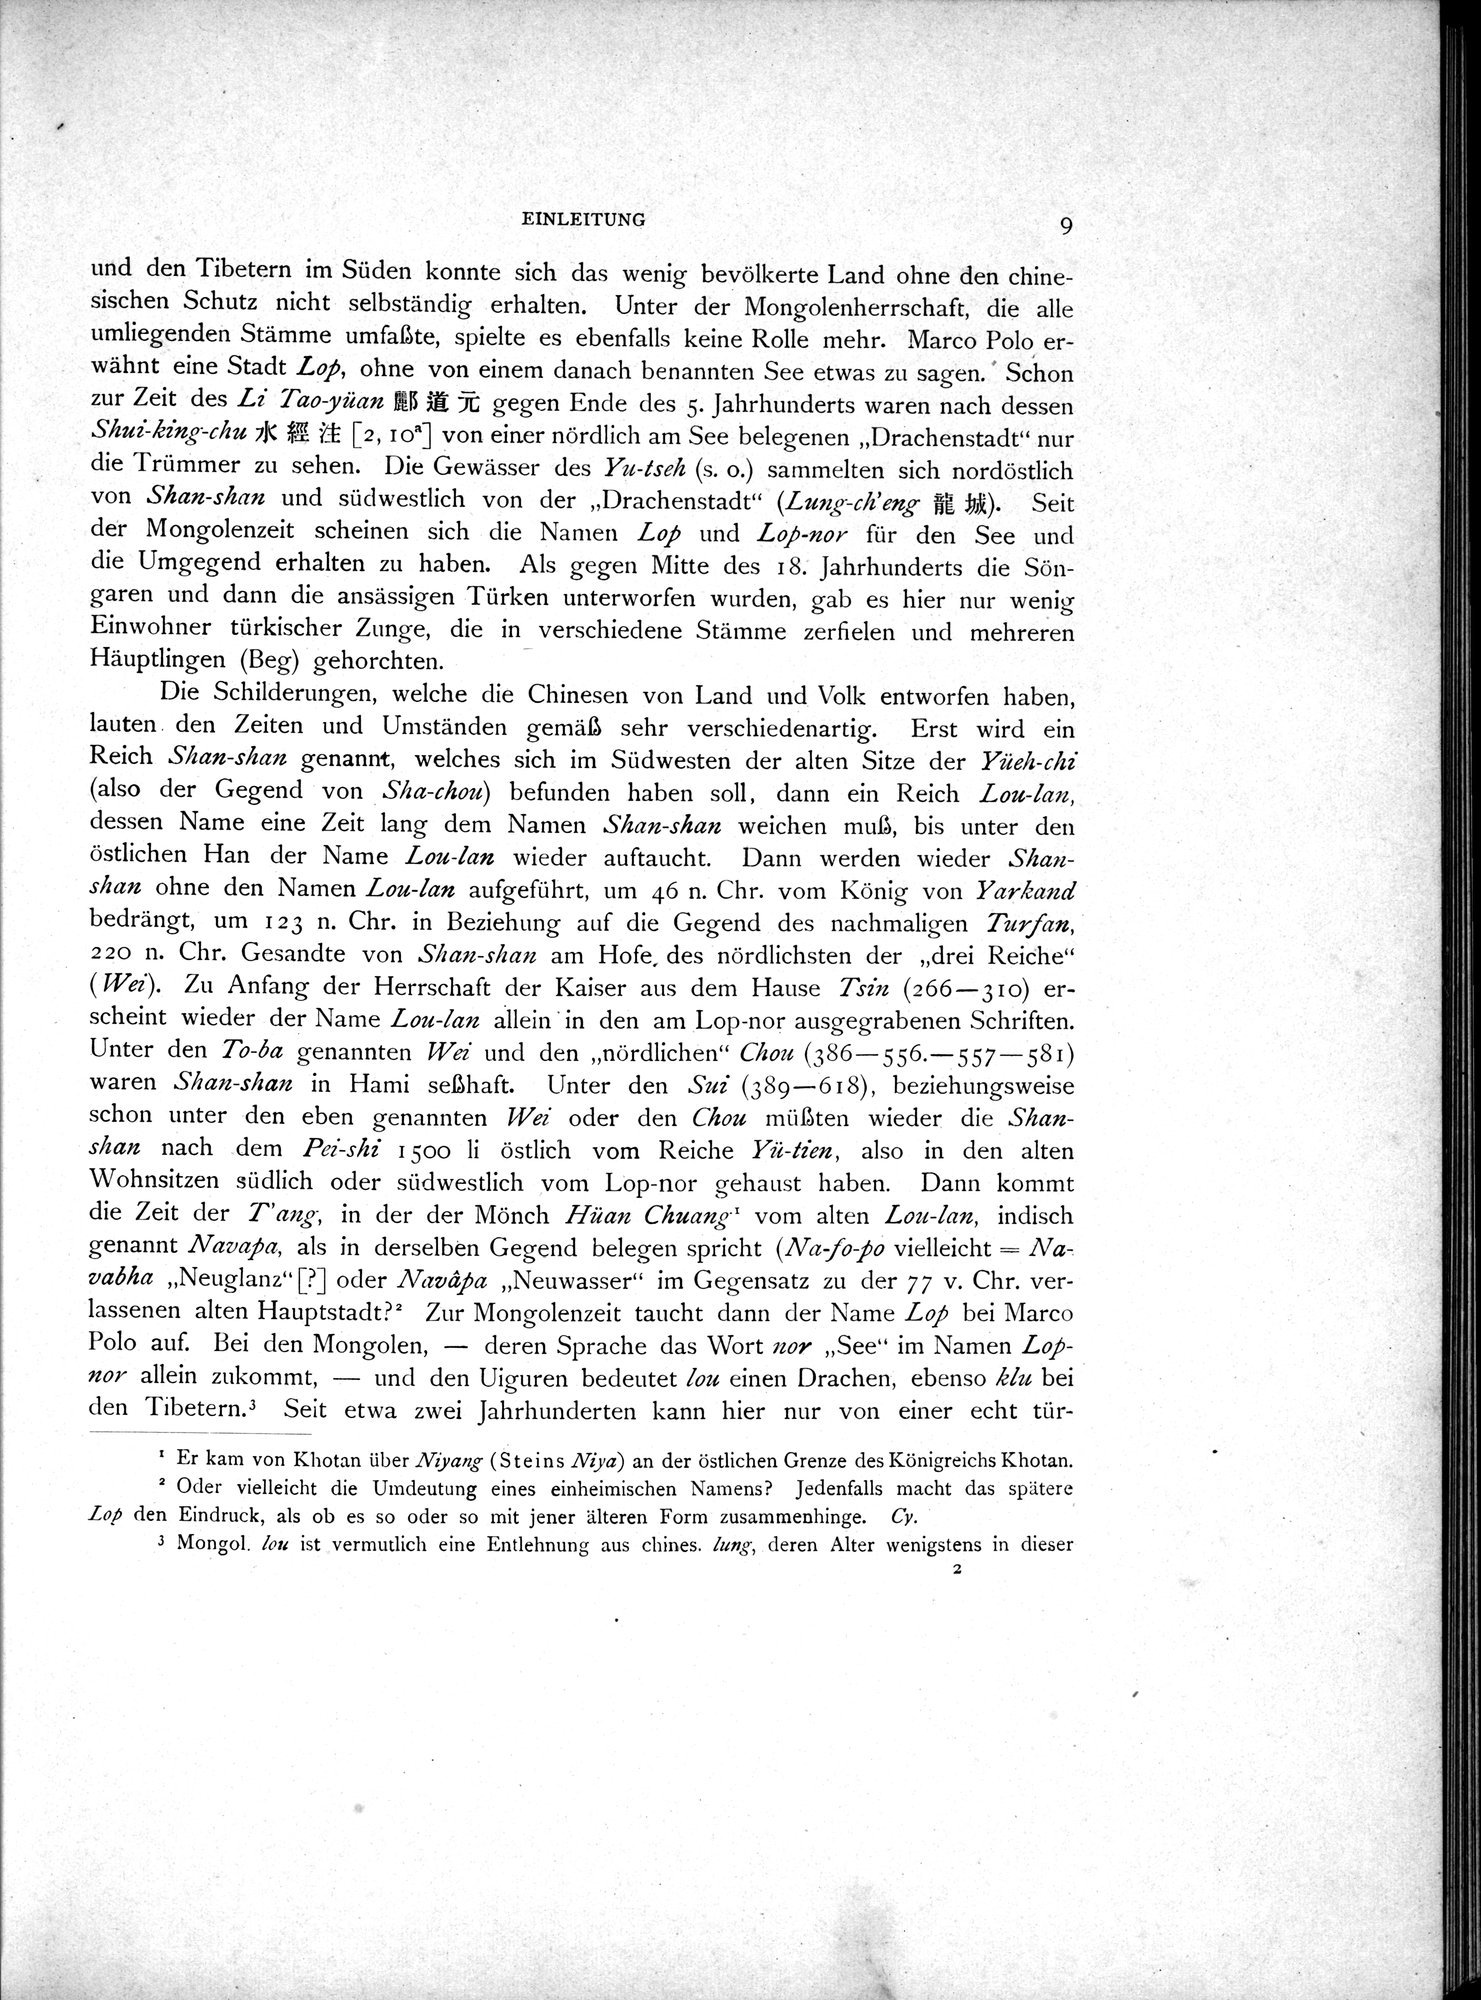 Die Chinesischen Handschriften- und sonstigen Kleinfunde Sven Hedins in Lou-lan : vol.1 / Page 33 (Grayscale High Resolution Image)